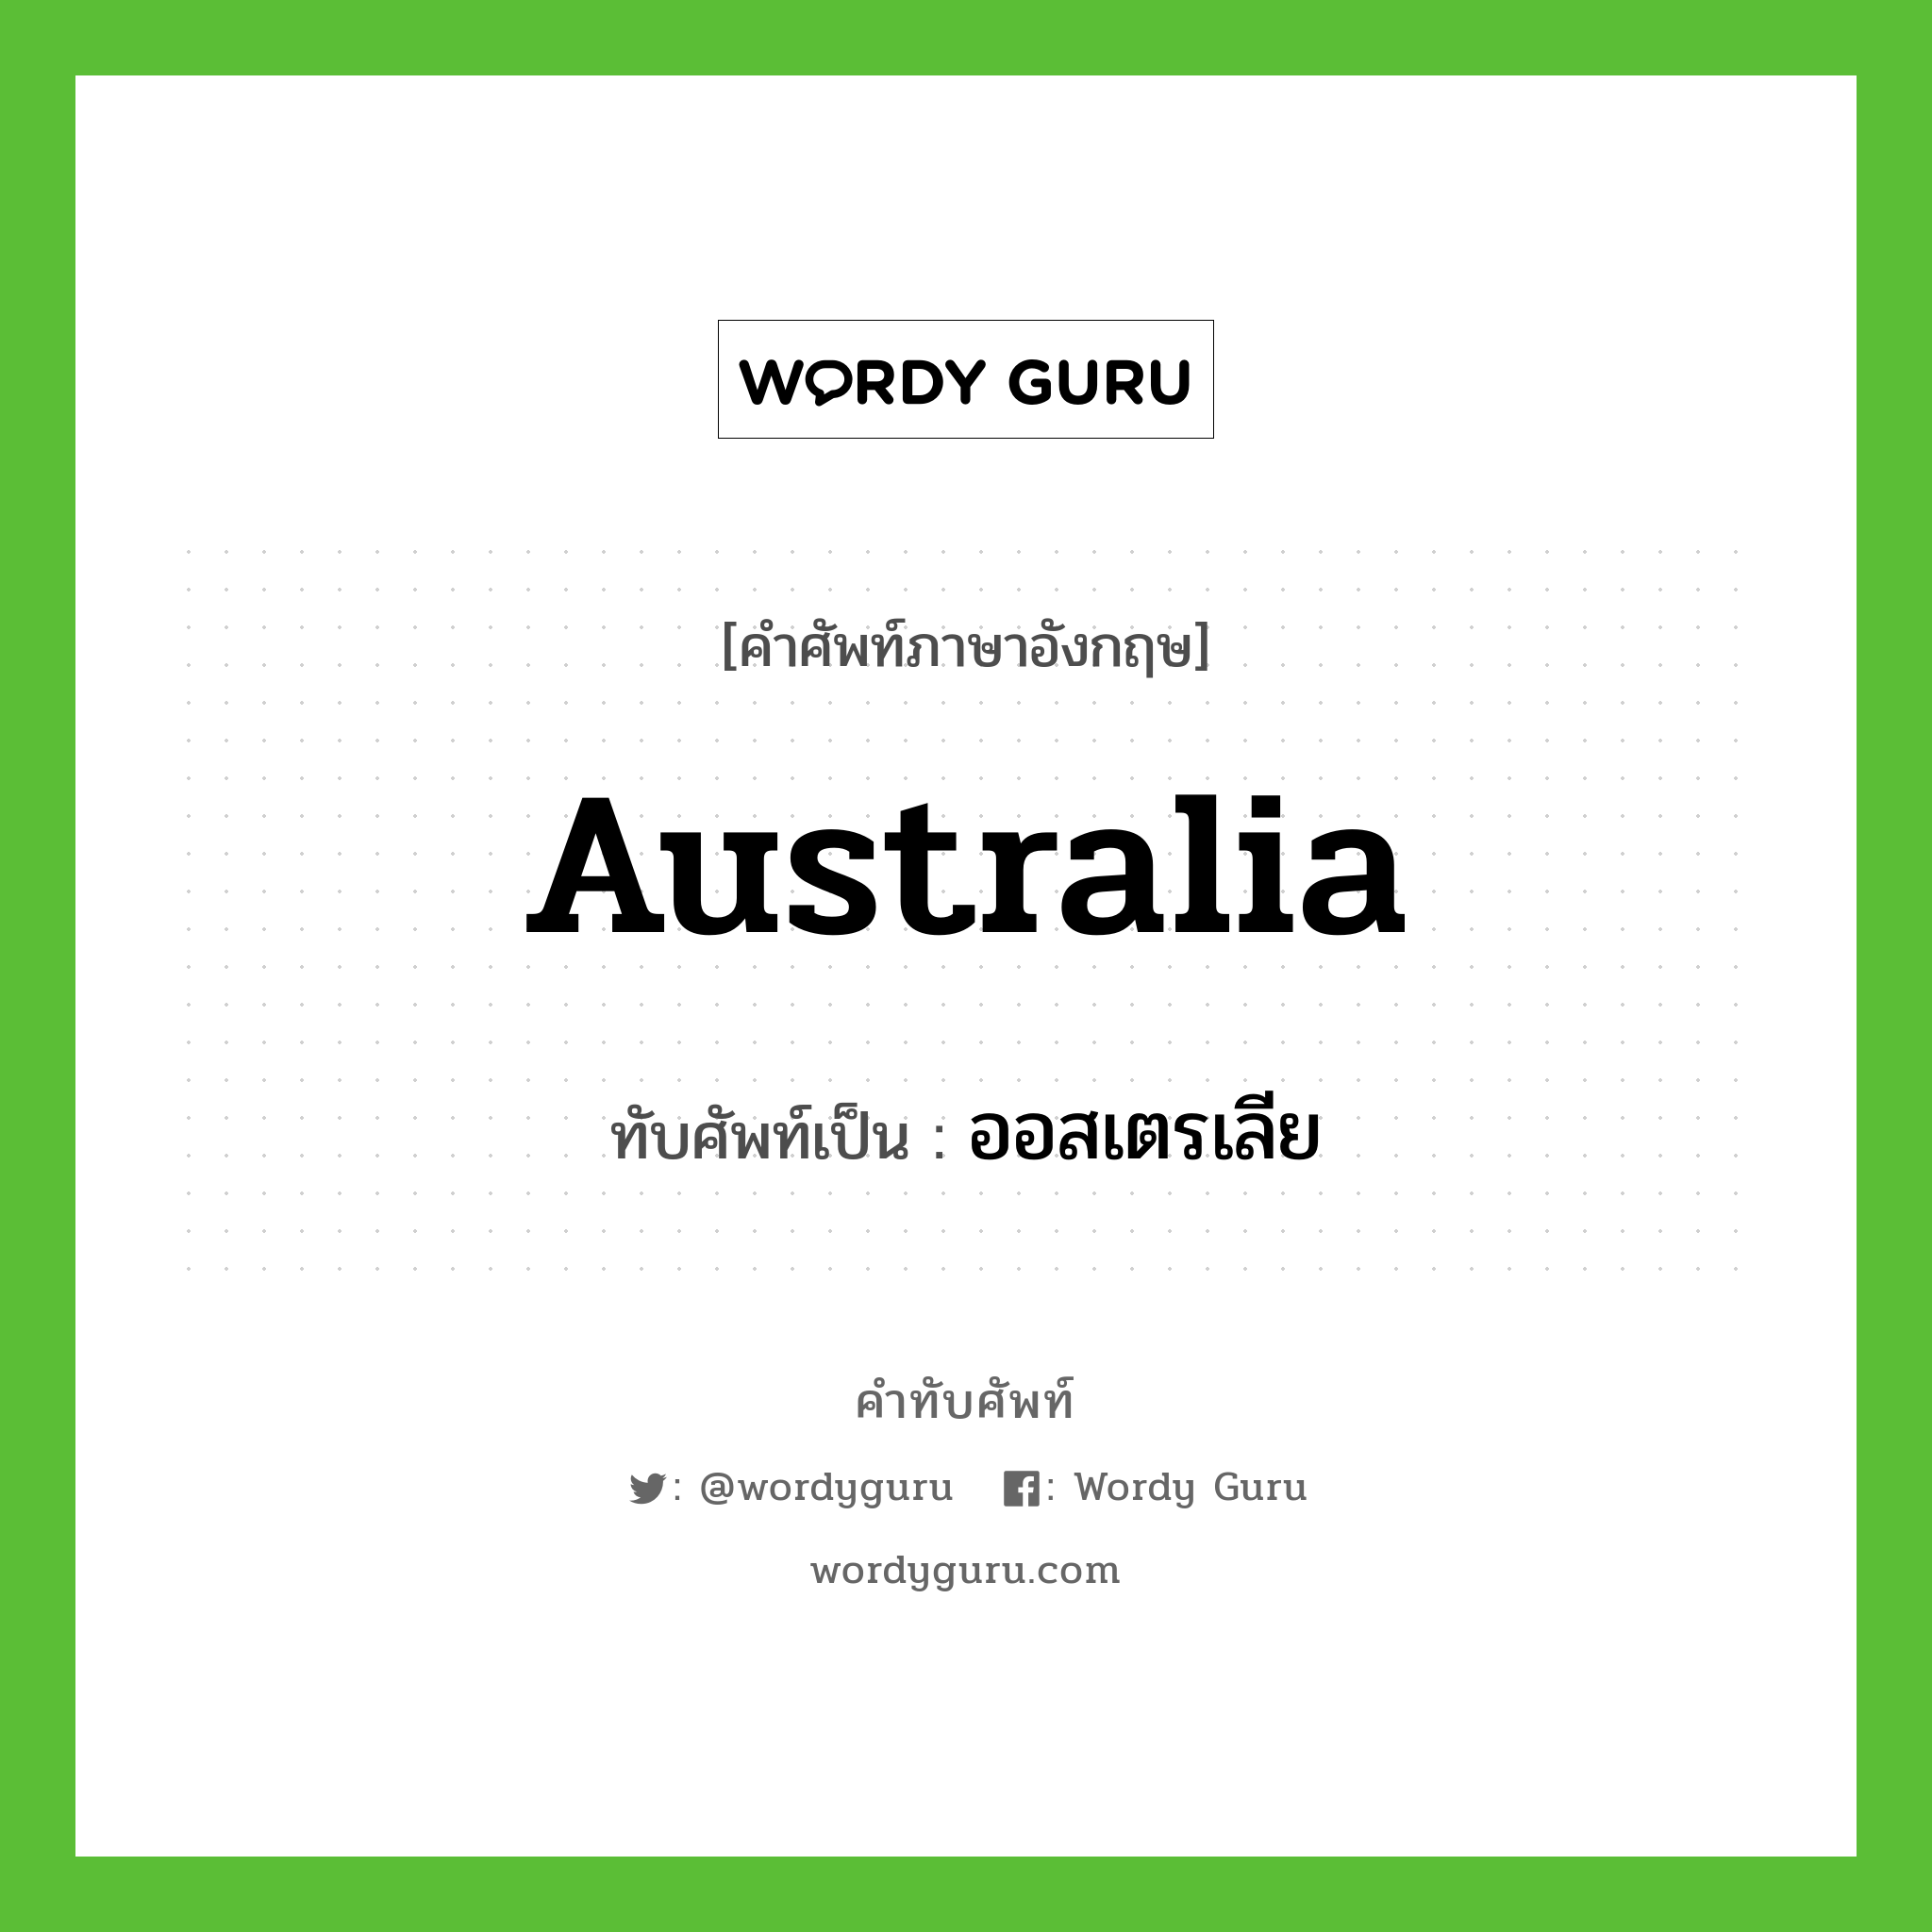 Australia เขียนเป็นคำไทยว่าอะไร?, คำศัพท์ภาษาอังกฤษ Australia ทับศัพท์เป็น ออสเตรเลีย